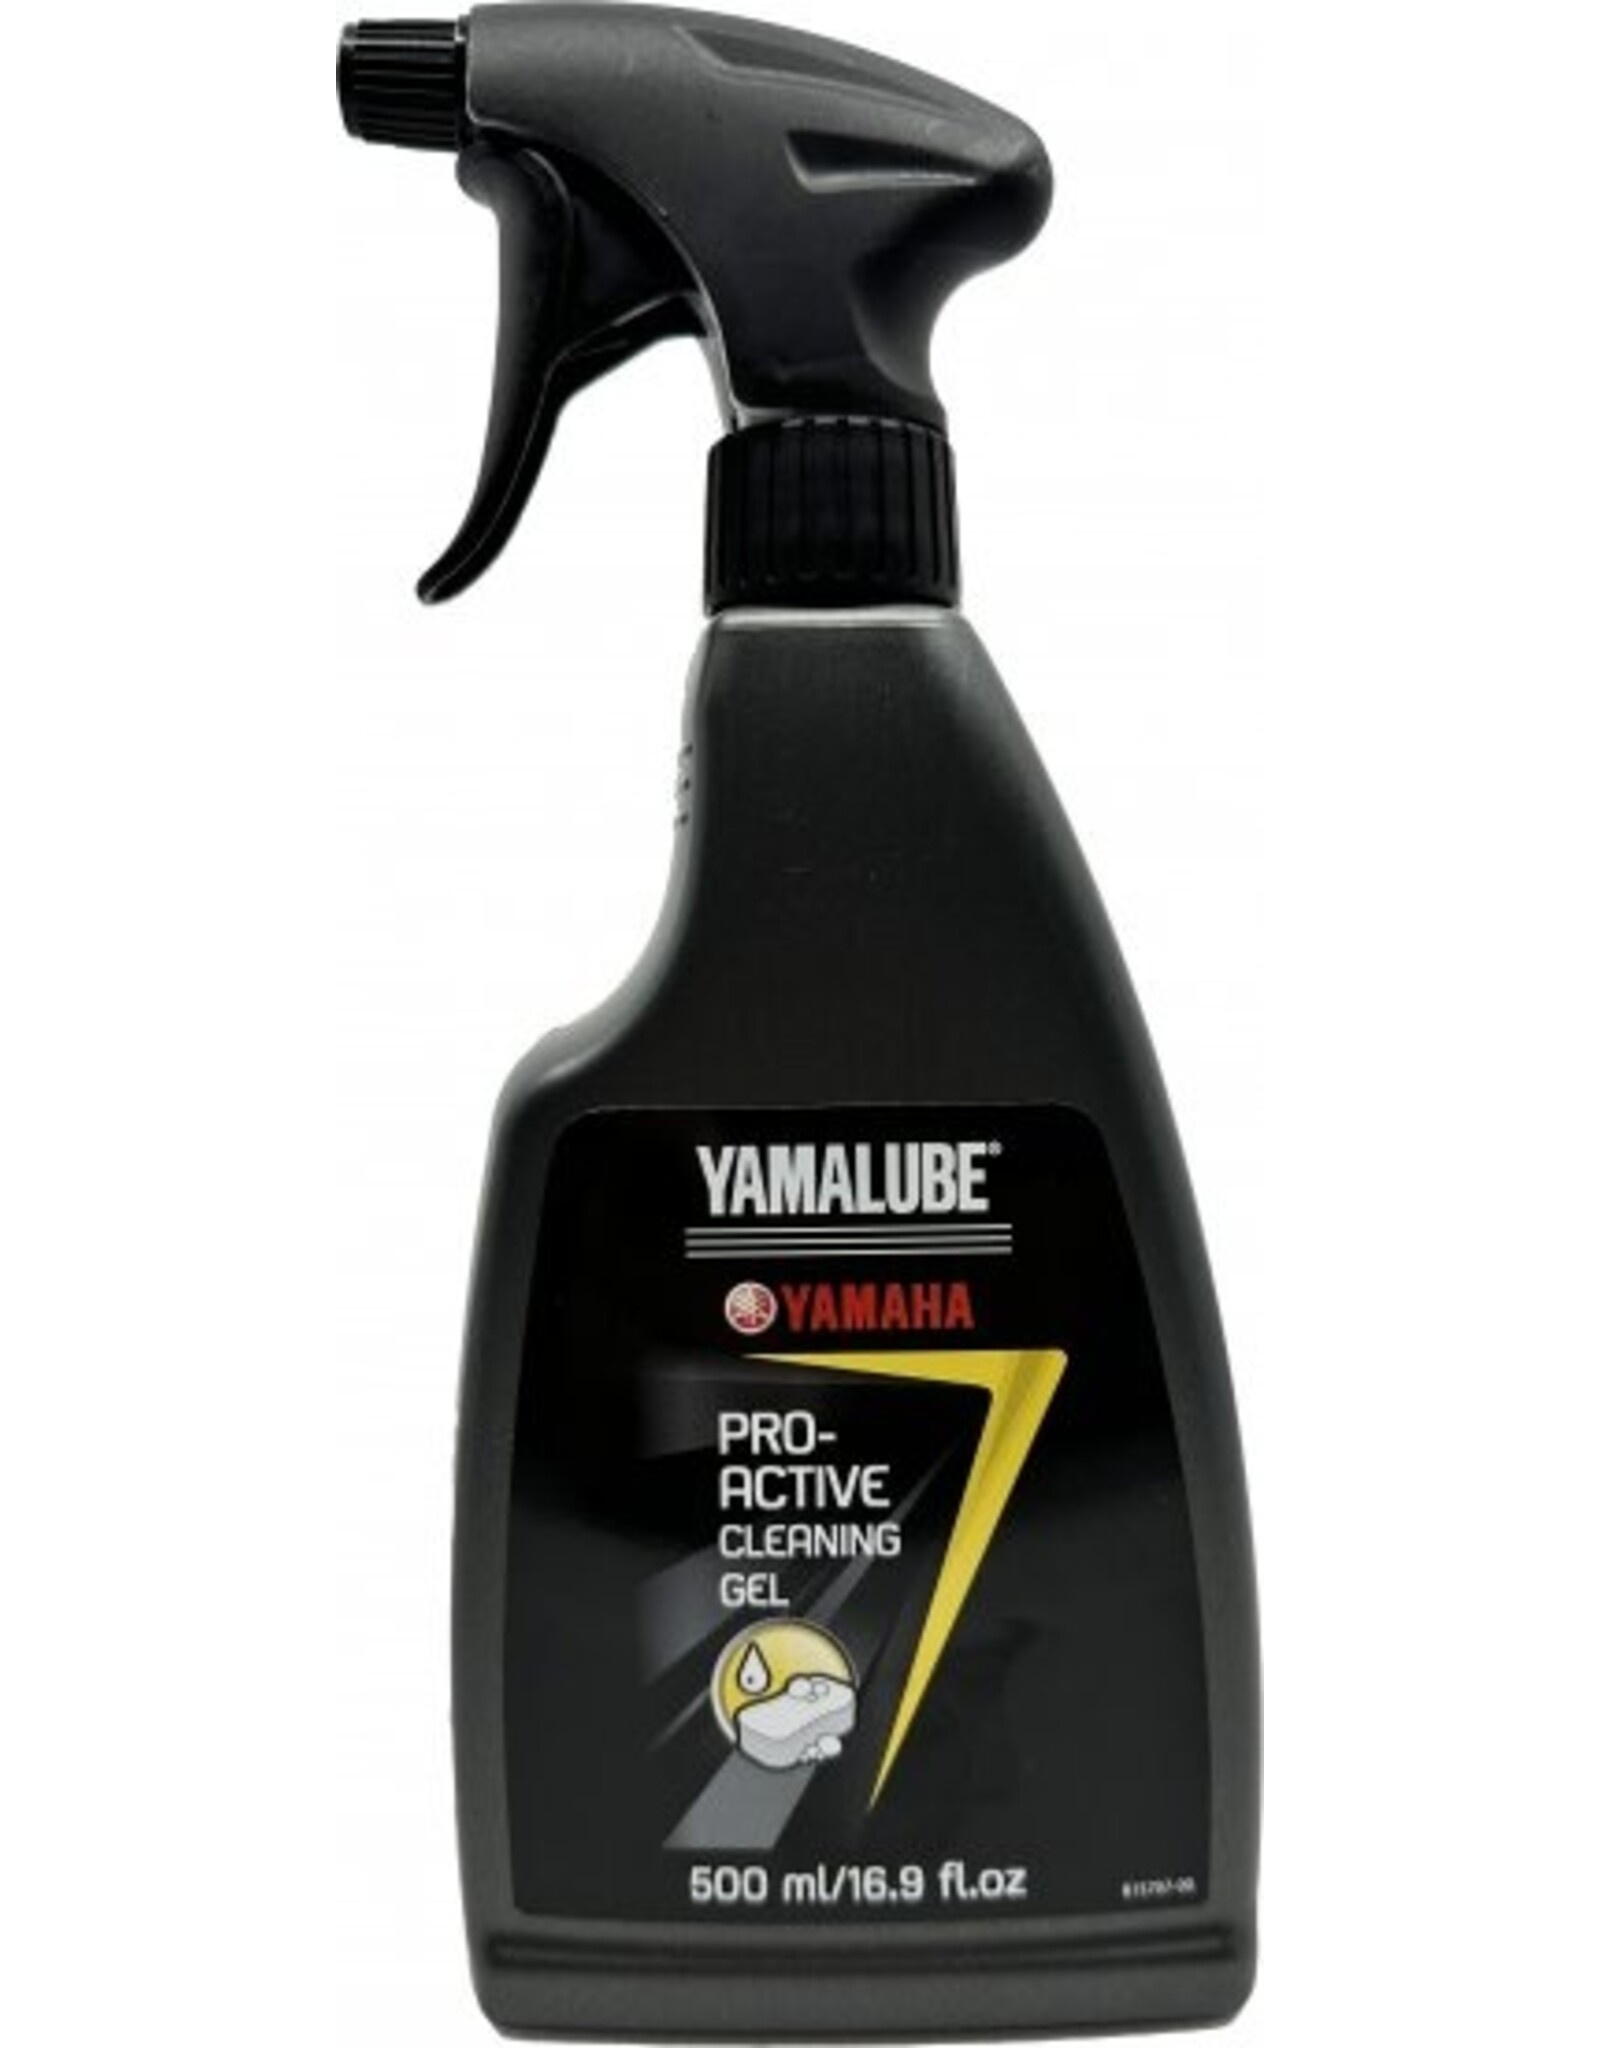 Yamalube Yamaha Yamalube Cleaning Gel 500ml